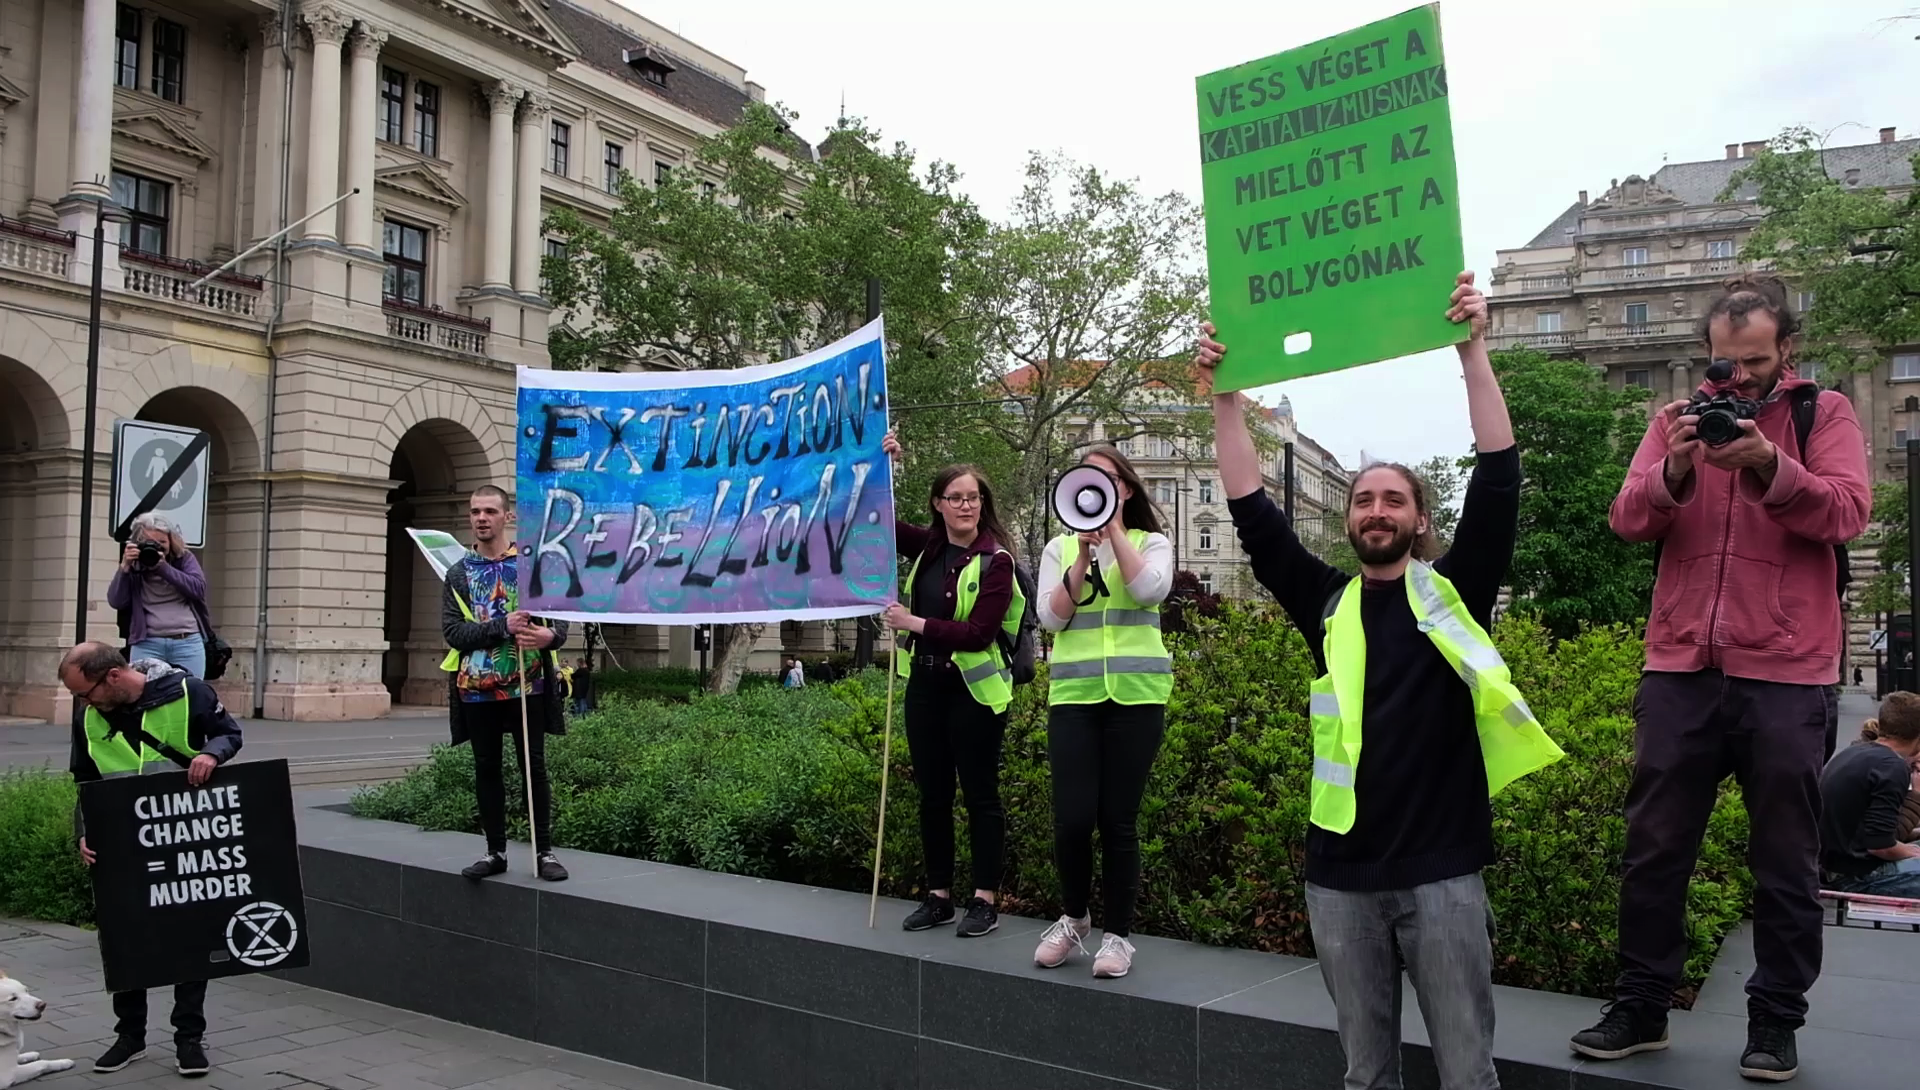 Környezetvédelmi tüntetés a Kossuth Lajos téren. A táblán a felirat: "Vess véget a kapitalizmusnak mielőtt az véget vet a bolygónak"